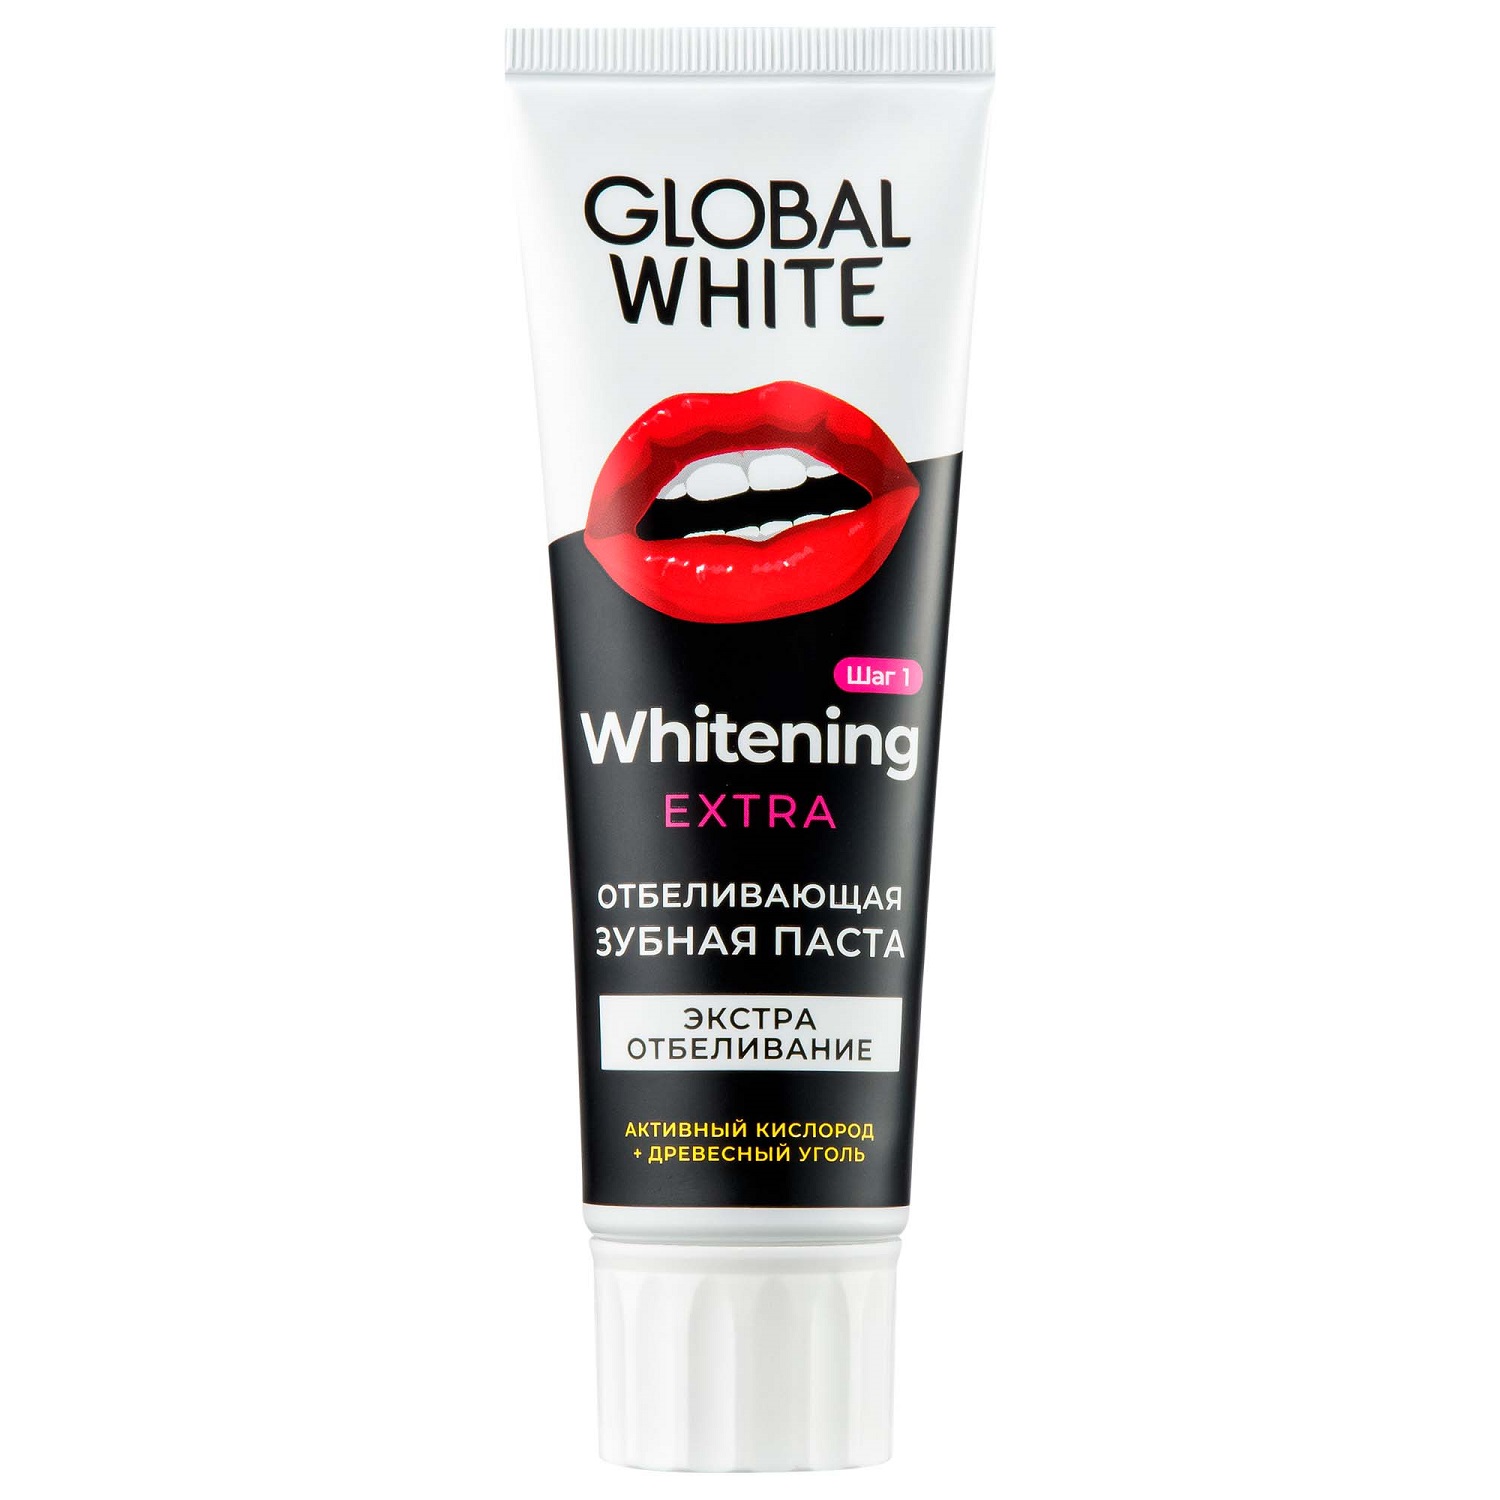 Global White Отбеливающая зубная паста Extra Whitening, 100 г (Global White, Подготовка к отбеливанию) в г пашинцев физическая подготовка квалифицированных дзюдоистов к главному соревнованию года